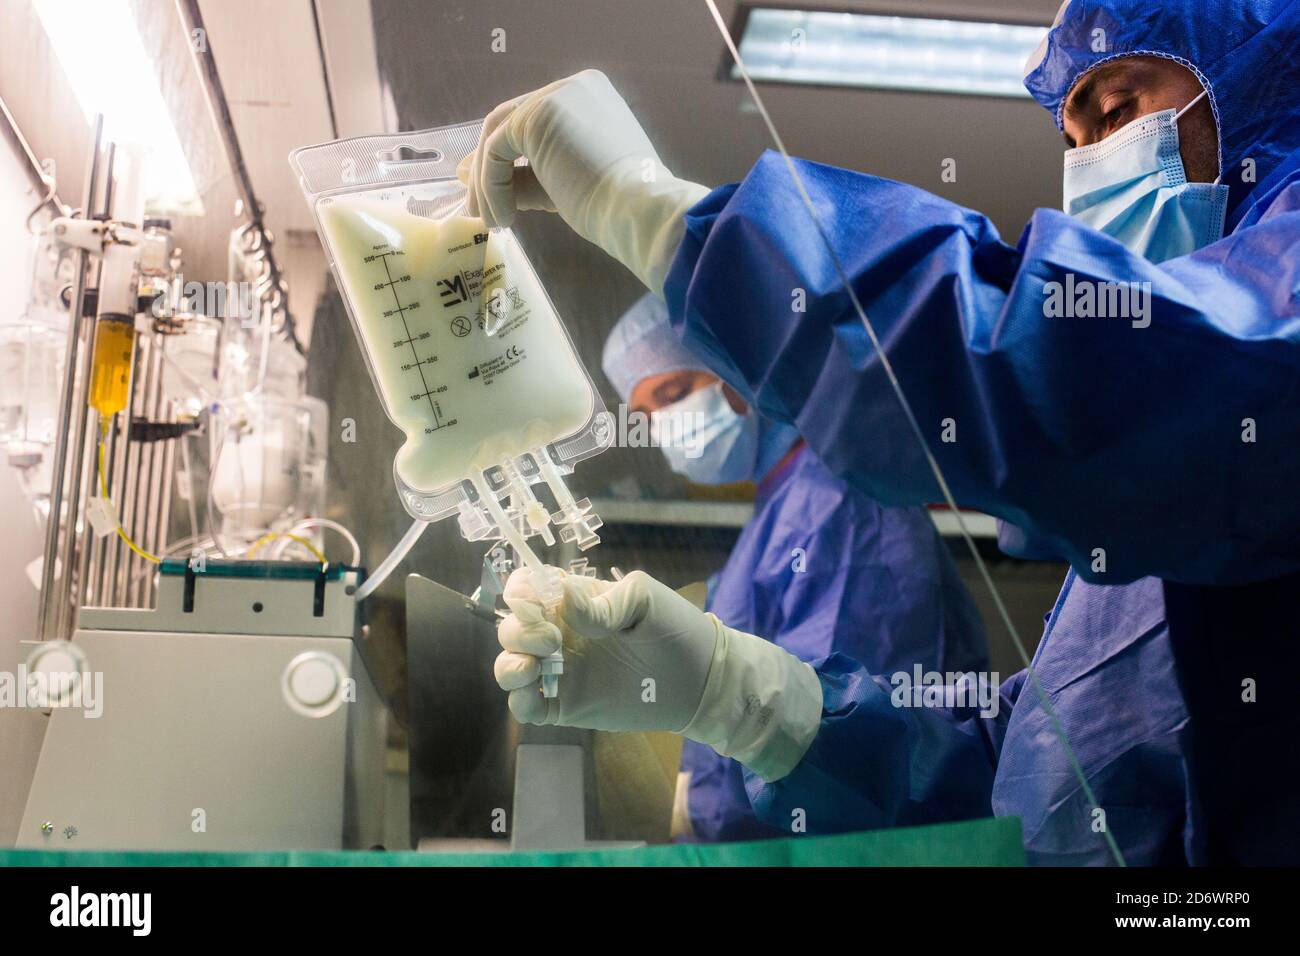 Preparazione automatizzata di miscele nutrizionali parenterali per reparti neonatali. Farmacia Bordeaux CHU - Gruppo ospedaliero Pellegrin, Francia. Foto Stock